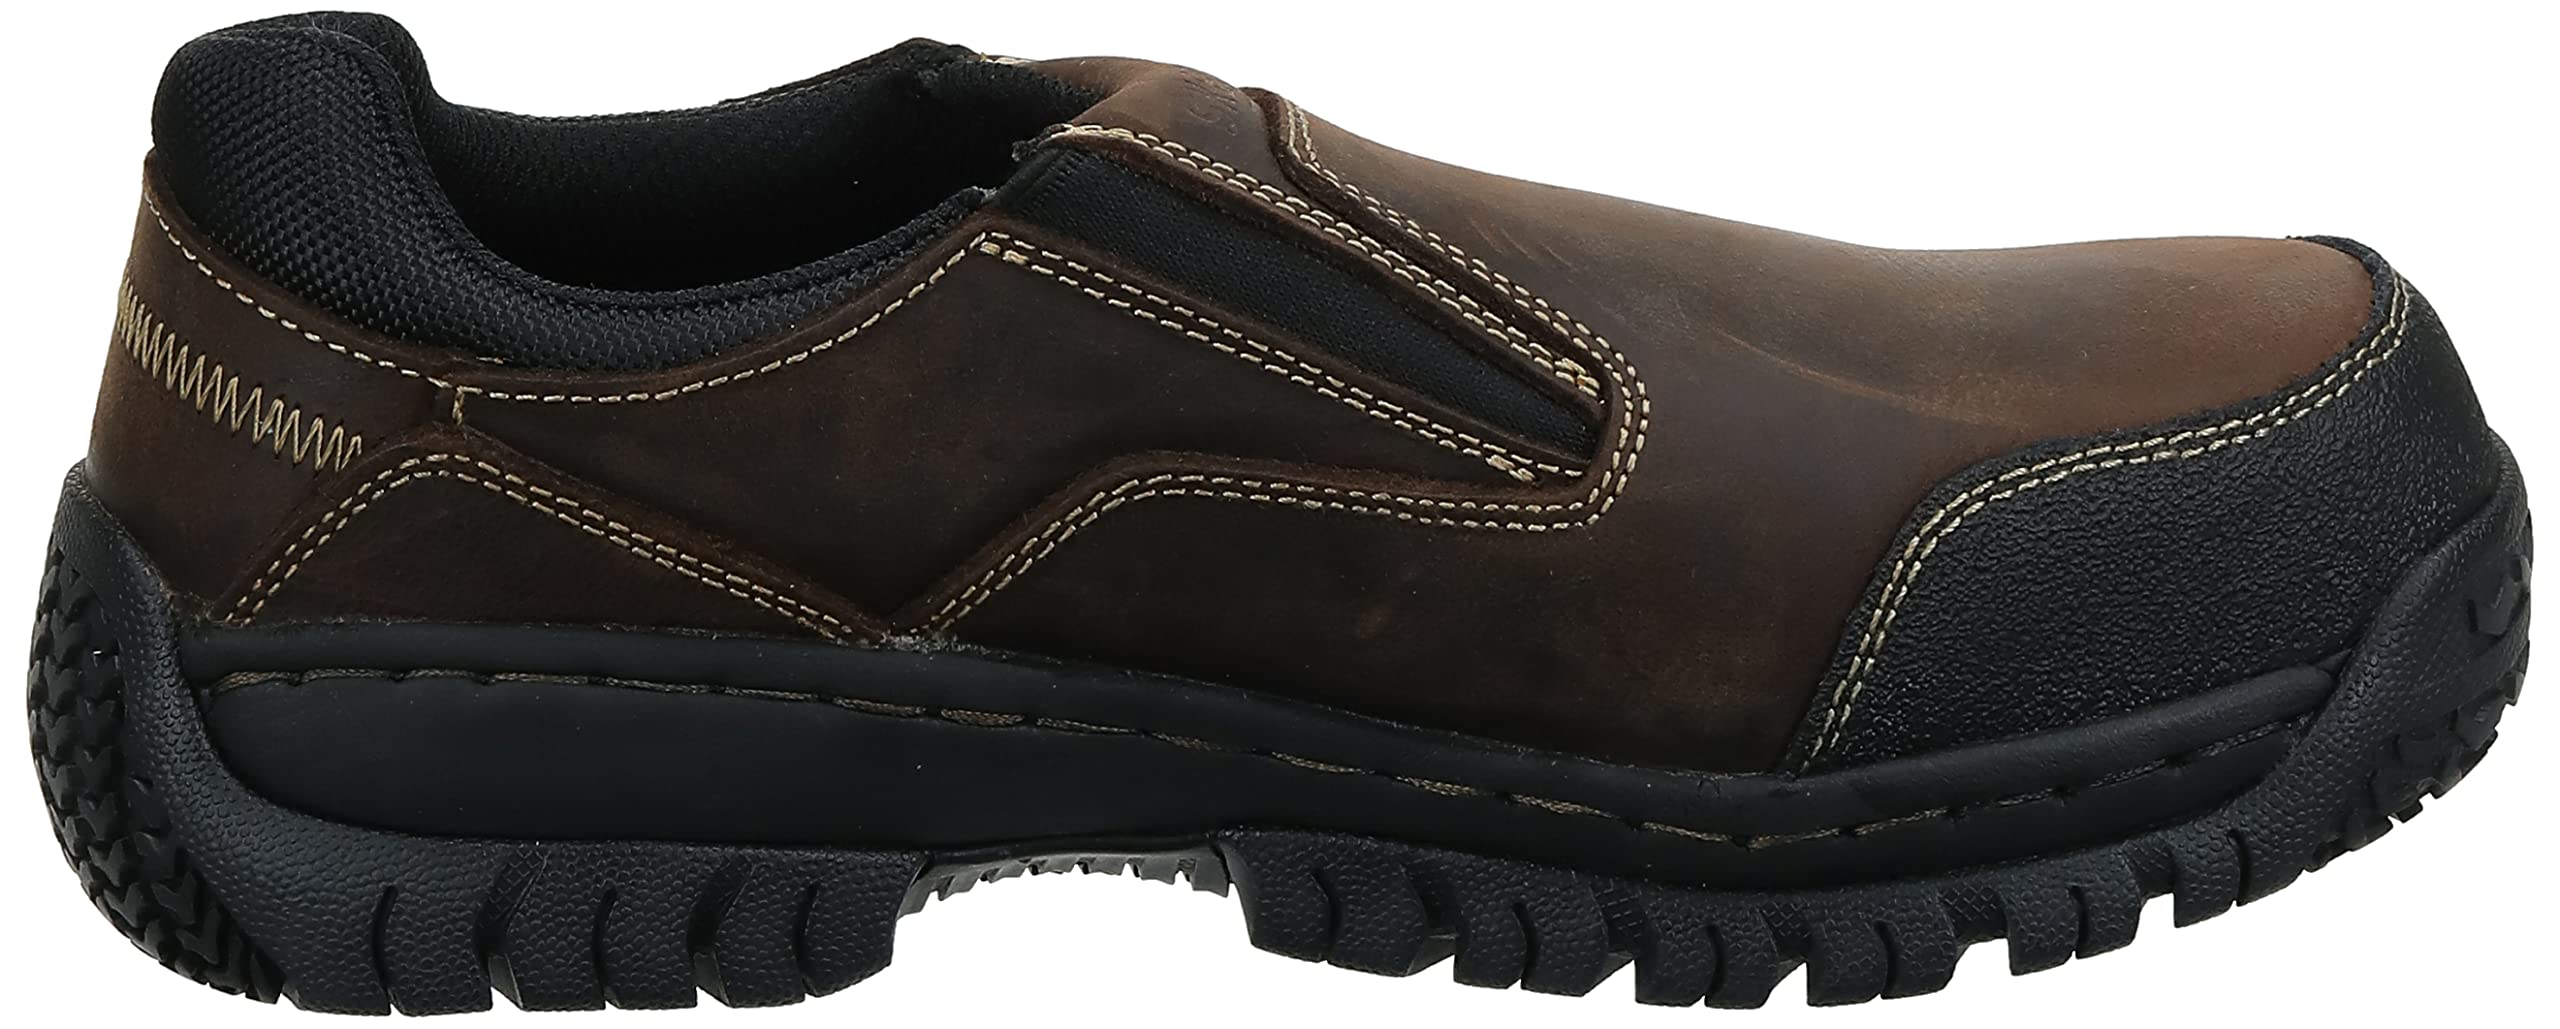 Skechers for Work Men's Hartan Steel Toe Slip-On Shoe